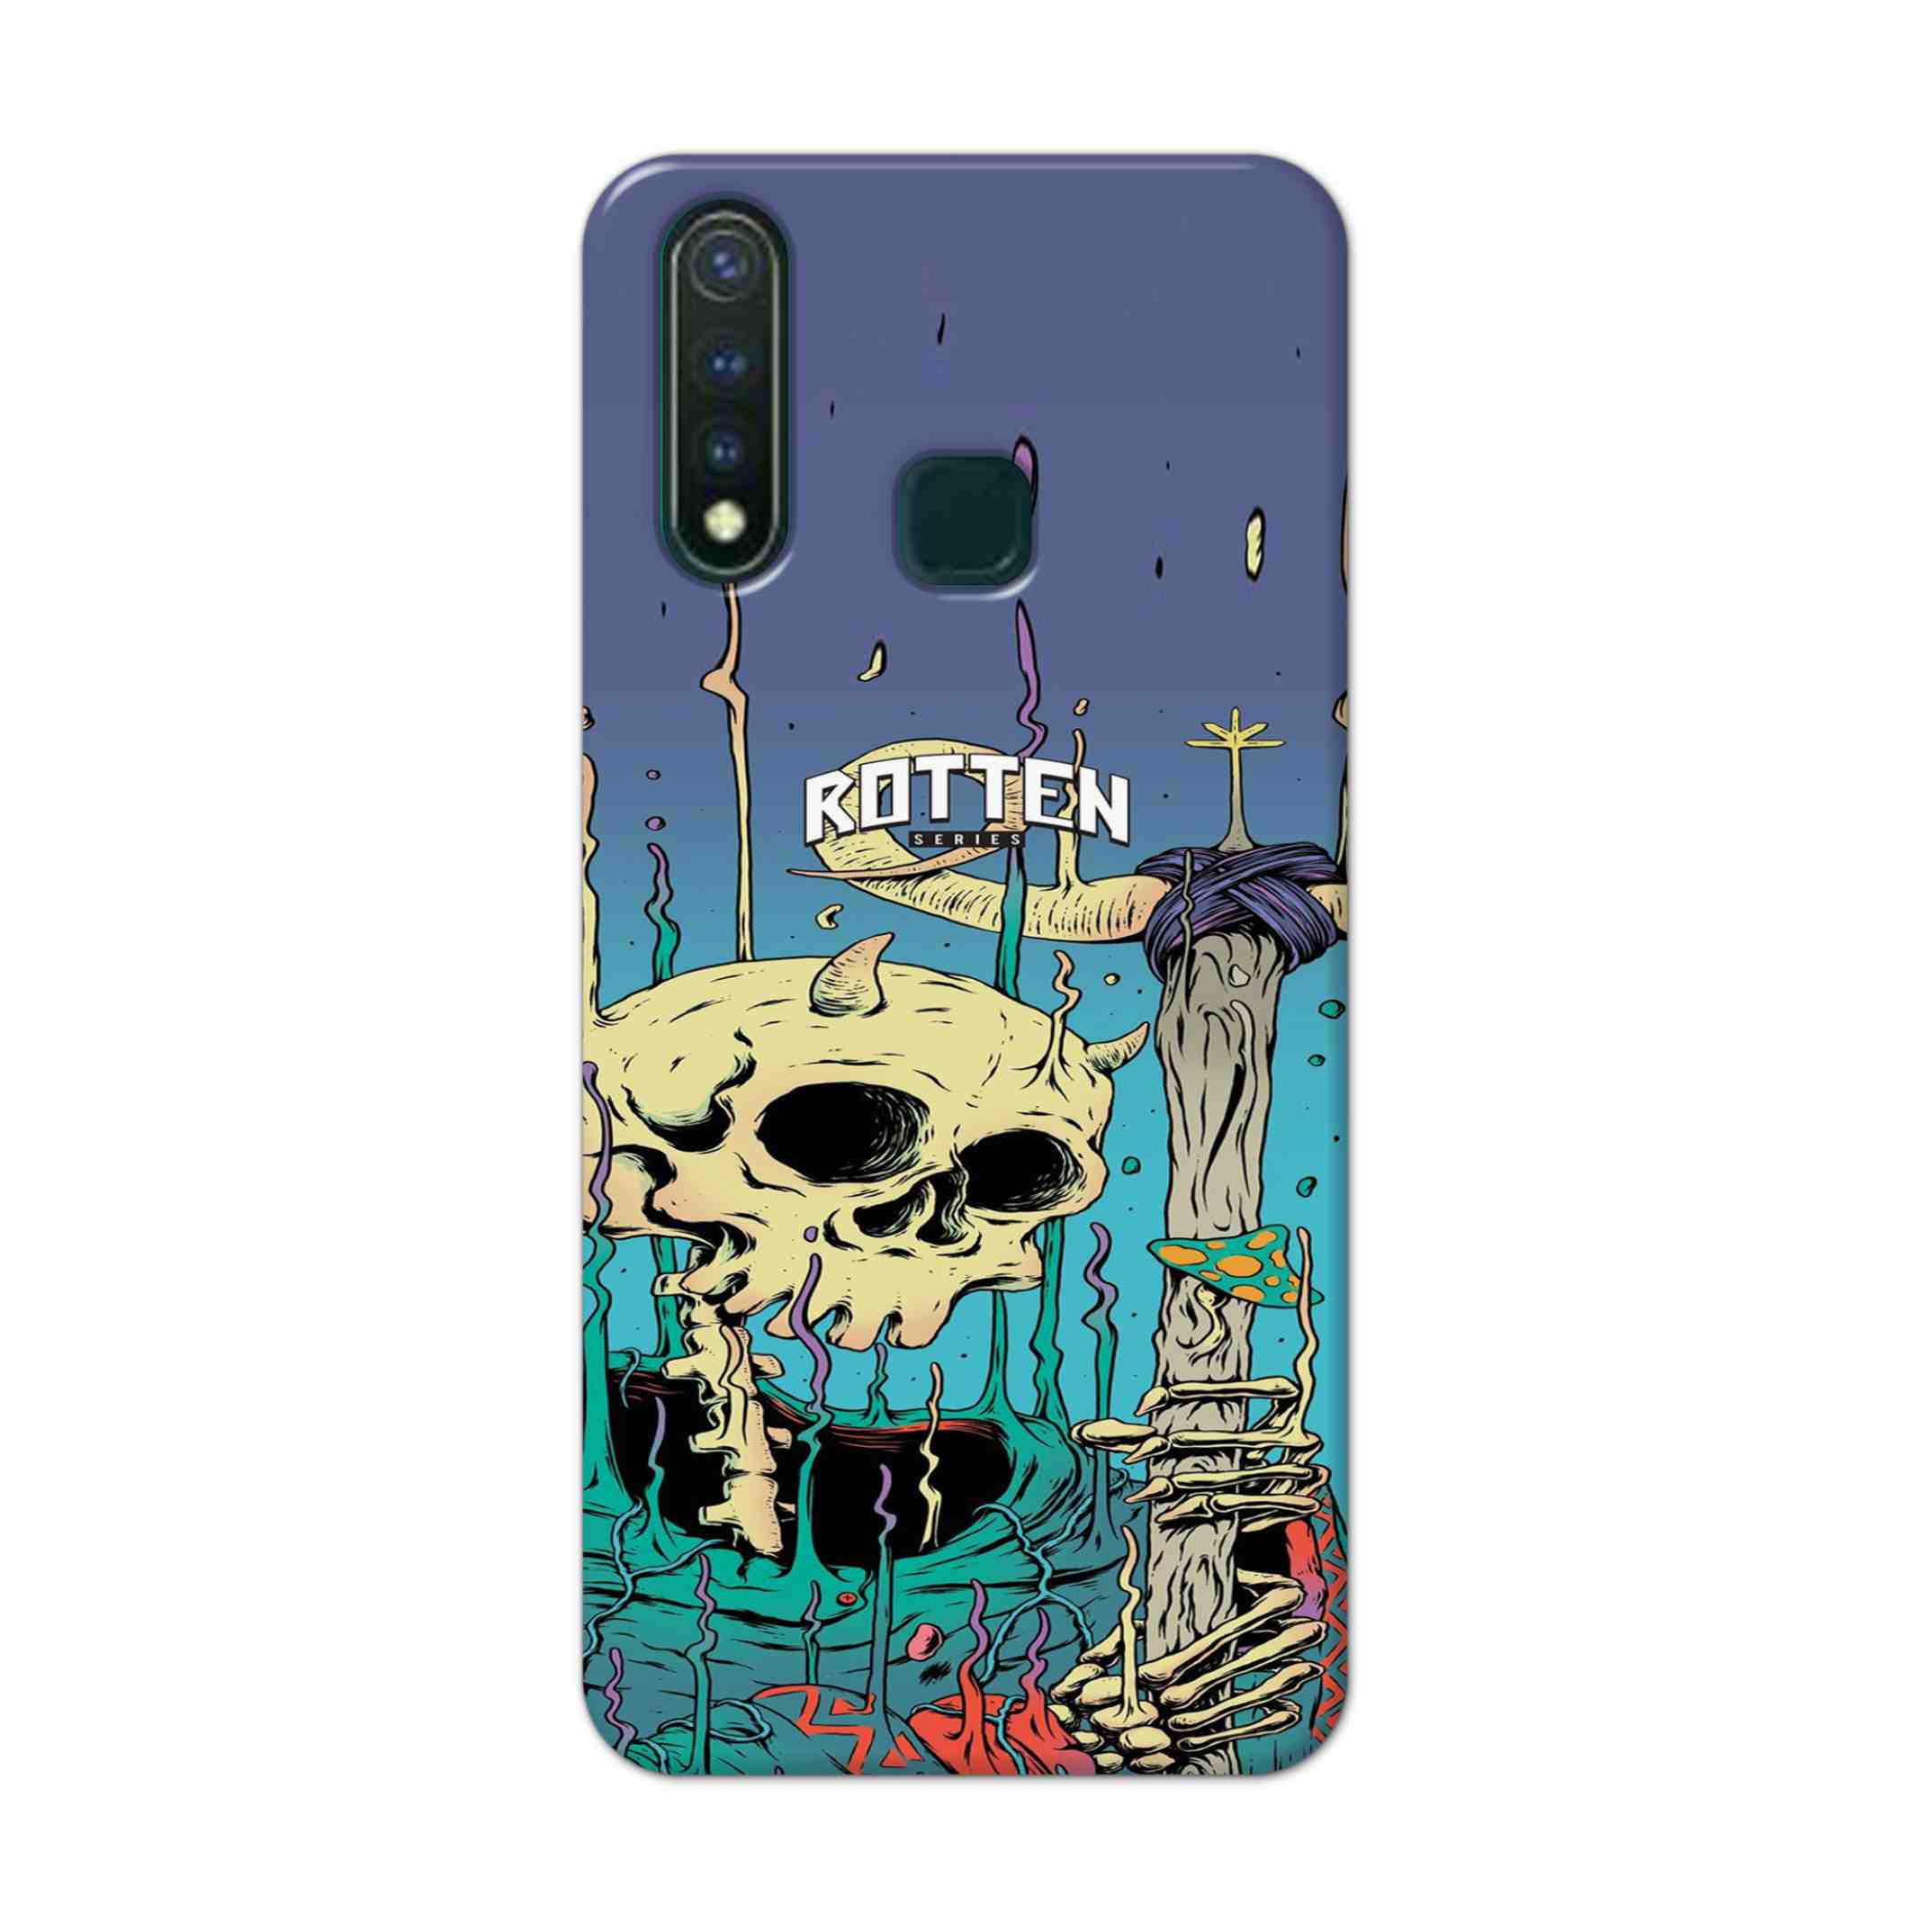 Buy Skull Hard Back Mobile Phone Case Cover For Vivo U20 Online